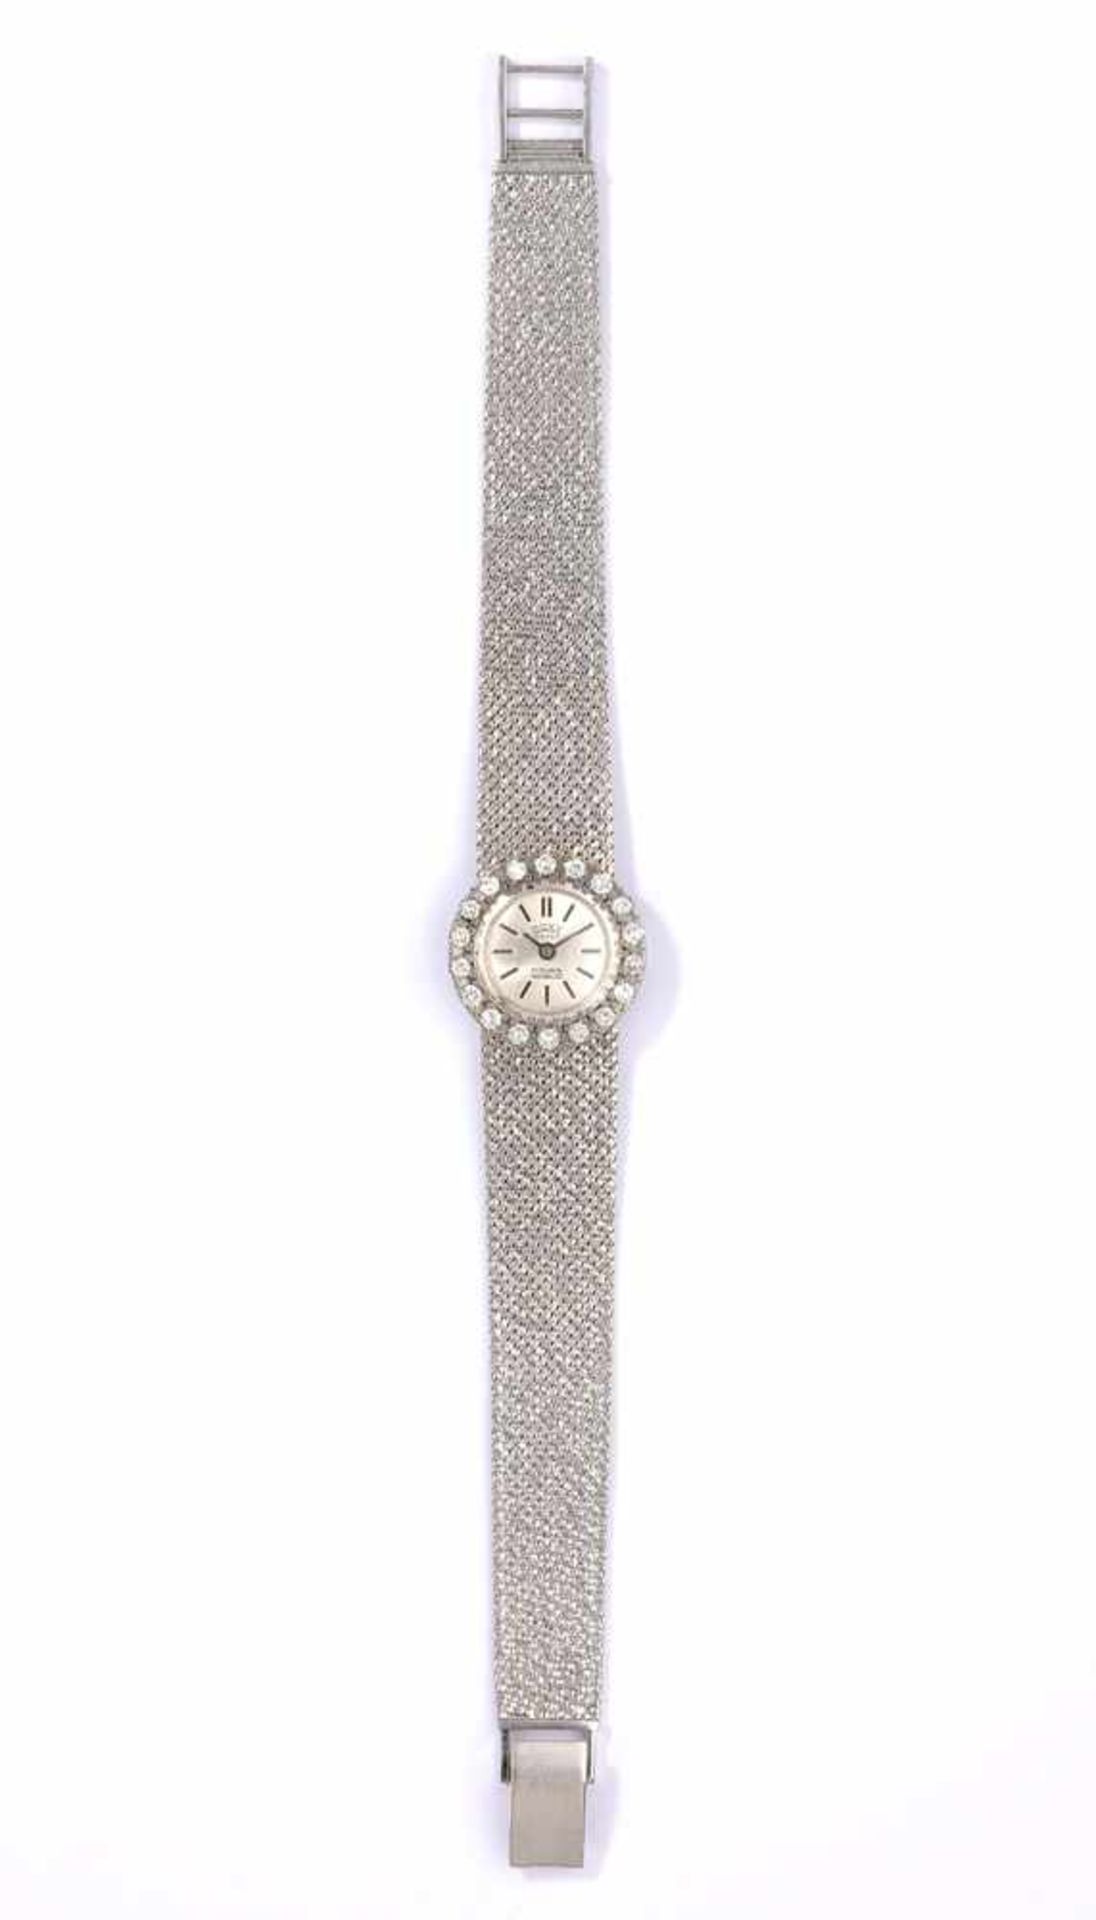 Damenarmbanduhr von Roxy750-Weißgoldgehäuse und -armband, 17 Brillanten. L 18 cm, 35 g.